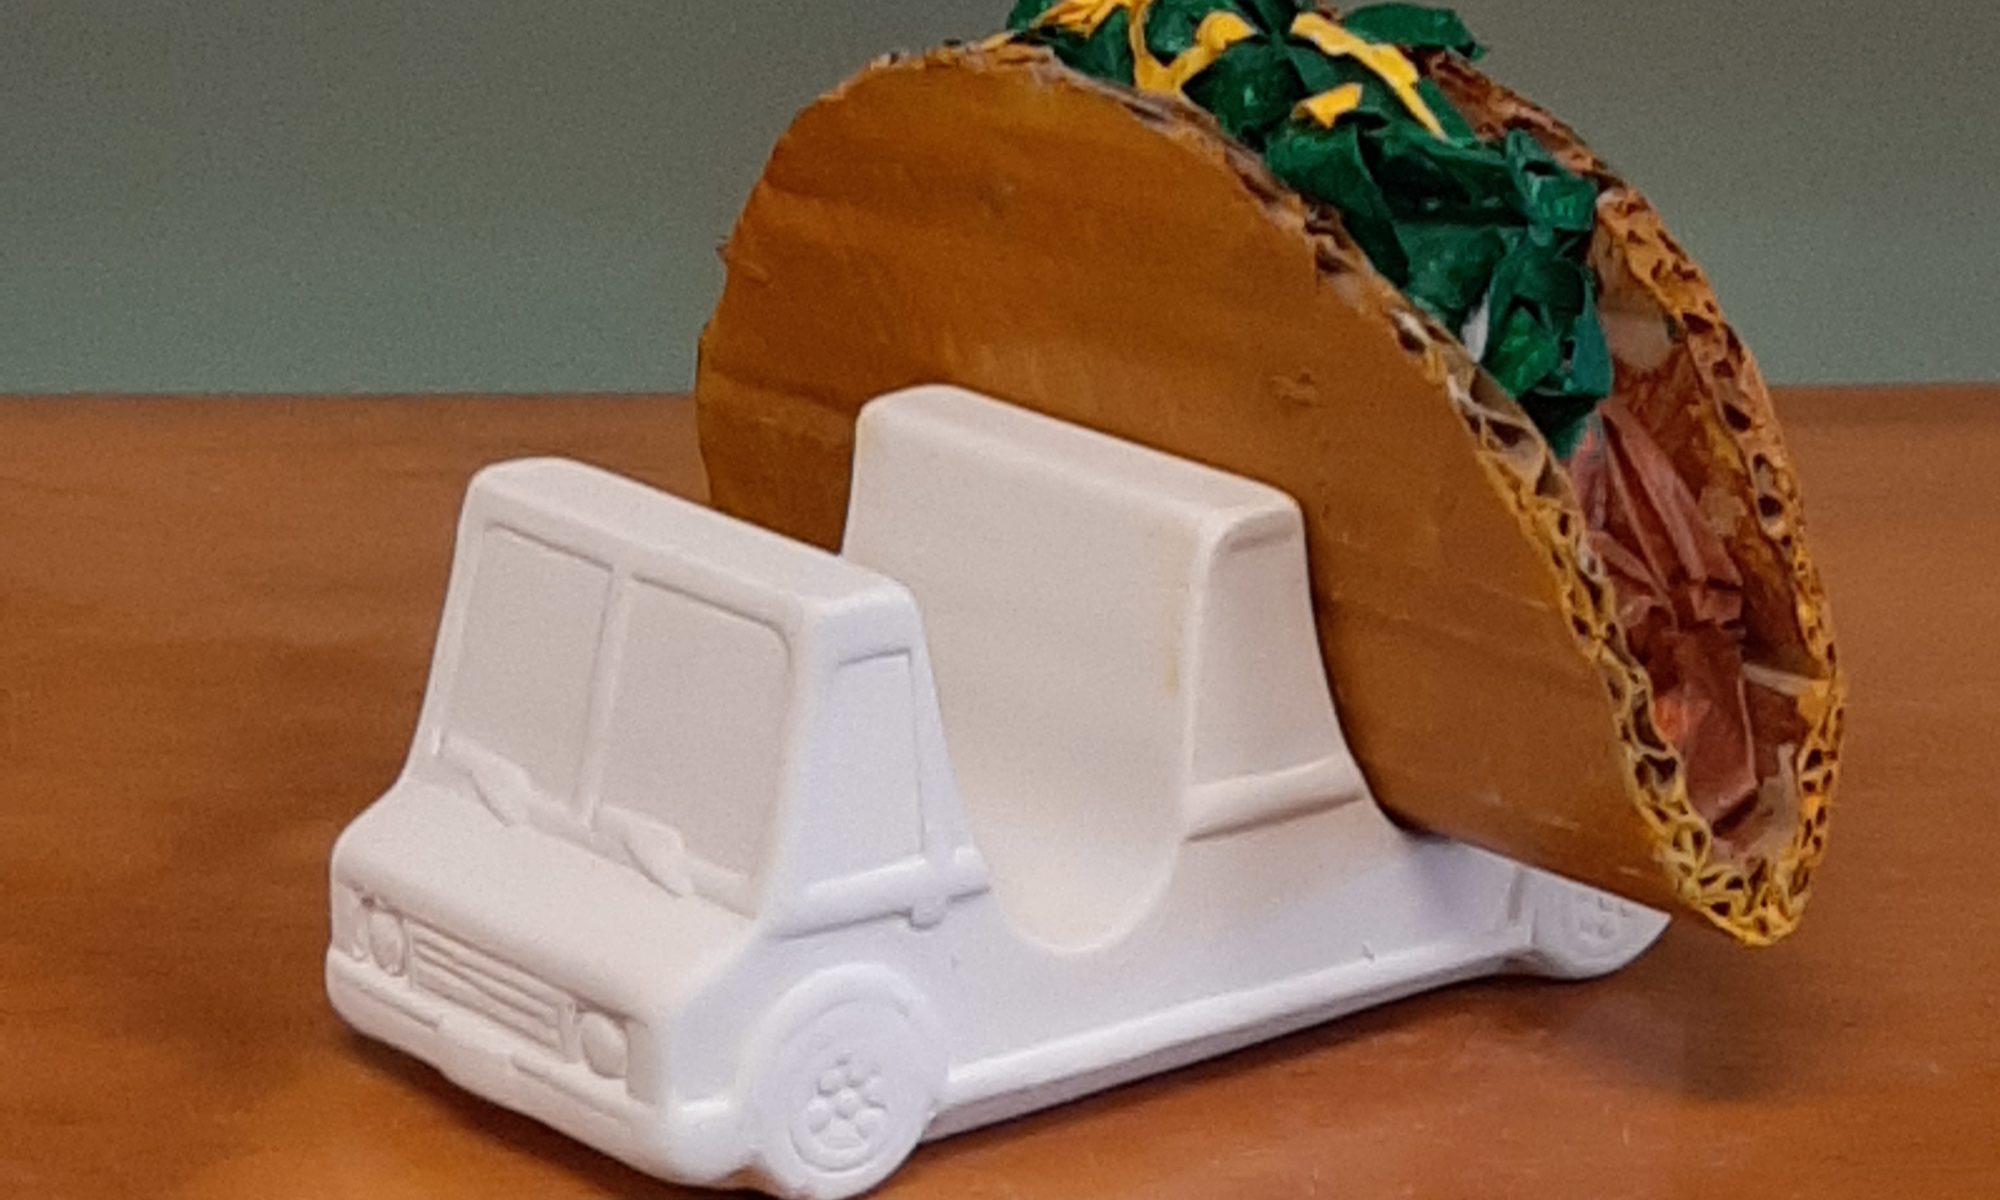 Taco Truck Taco Holder